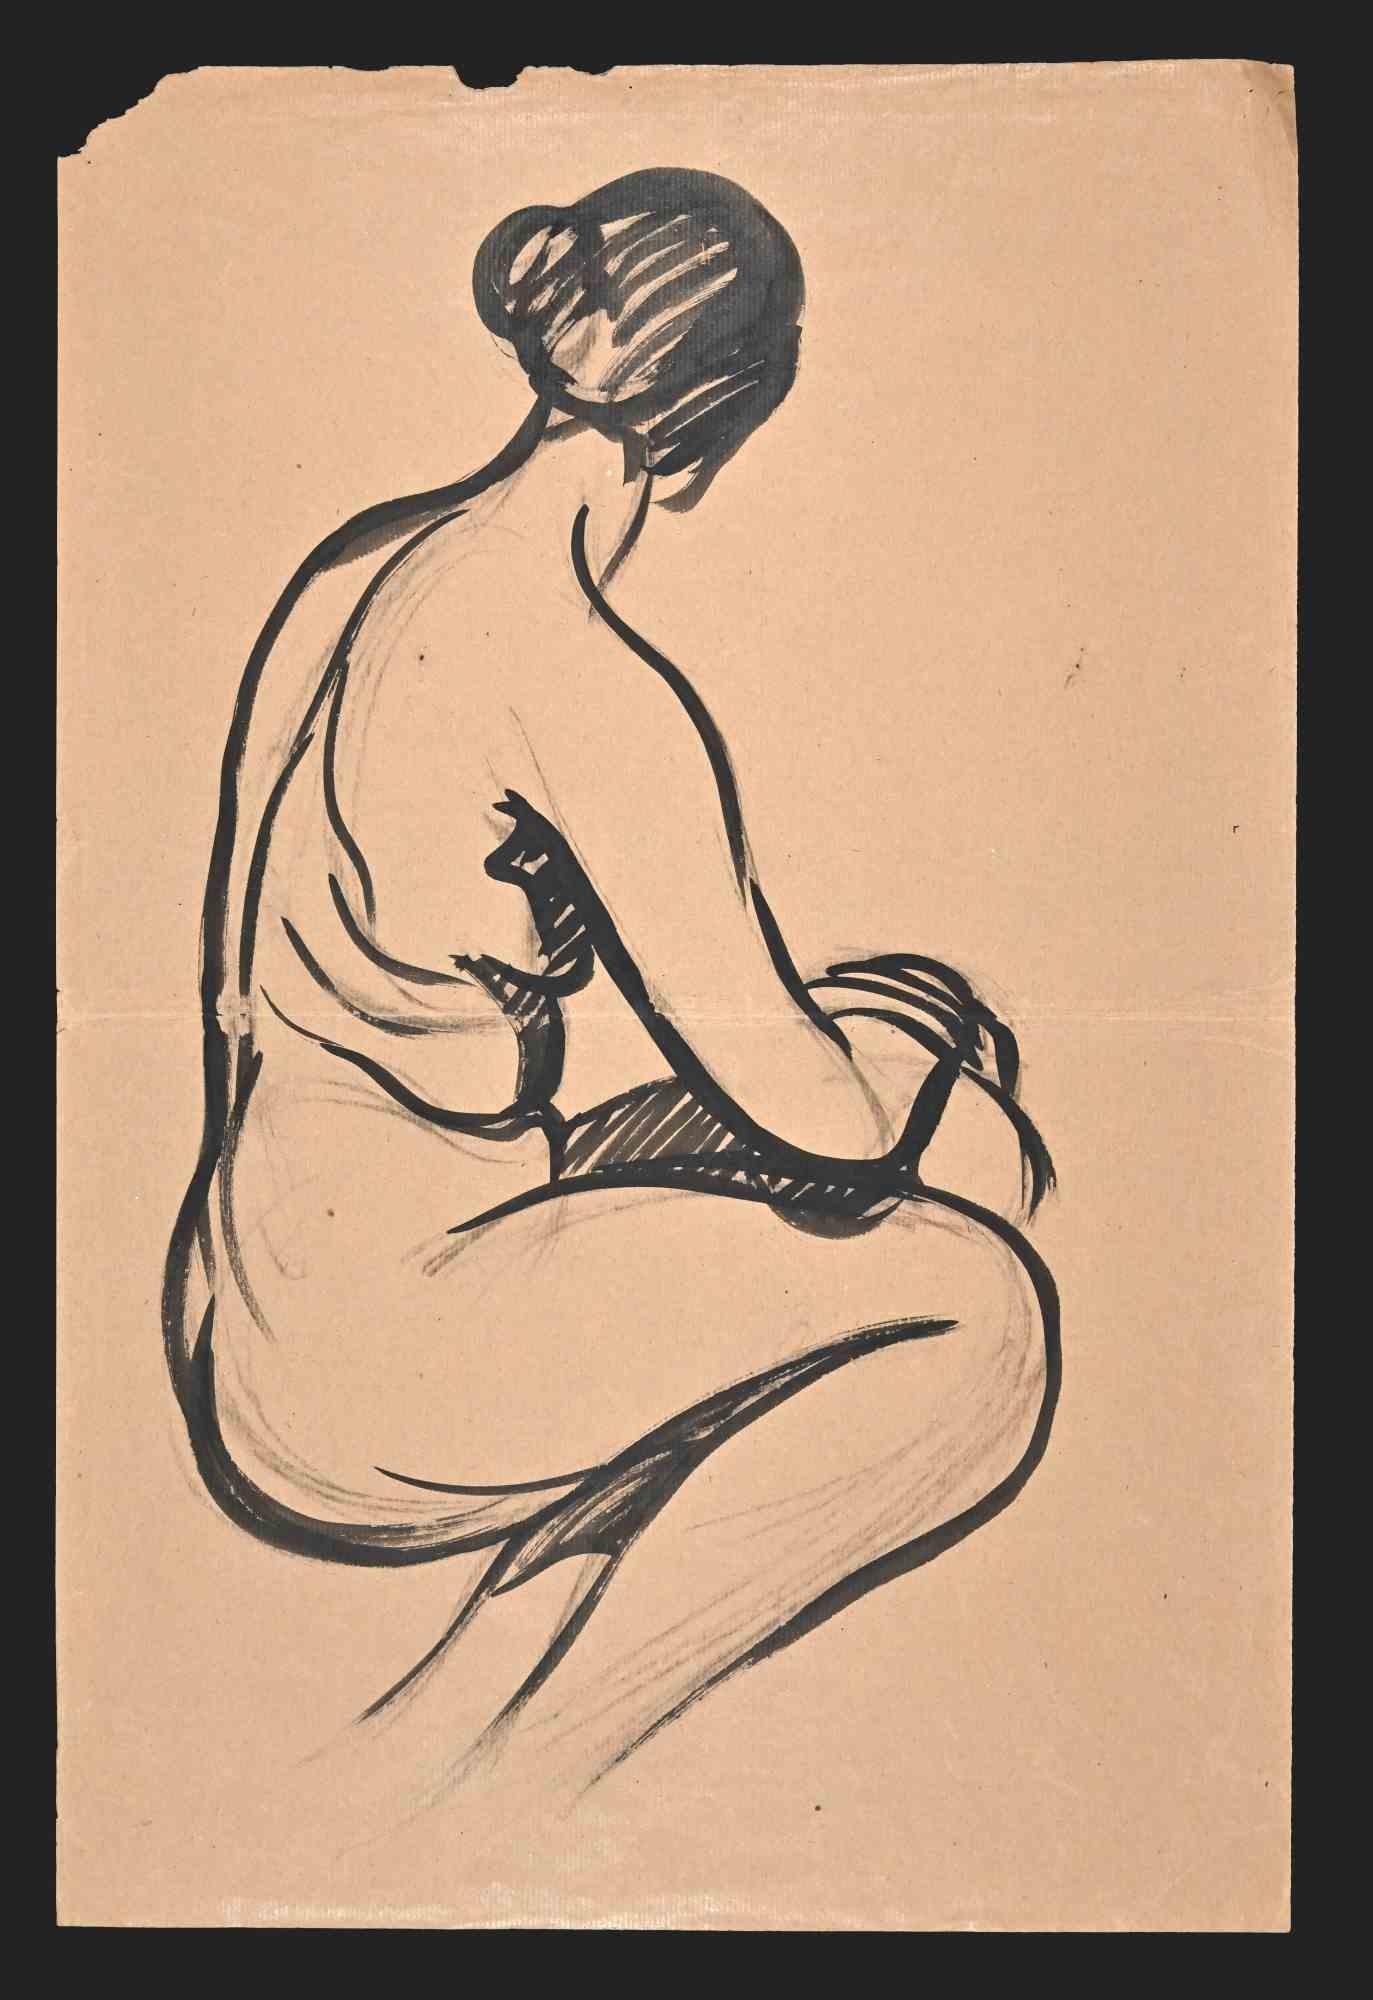 Reclined Nude ist eine Aquarellzeichnung, die Mitte des 20. Jahrhunderts von Jean Delpech (1916-1988) angefertigt wurde. 

Guter Zustand bis auf eine Faltung und ein kleines fehlendes Stück Papier am oberen Rand.

Das Kunstwerk wird in geschickten